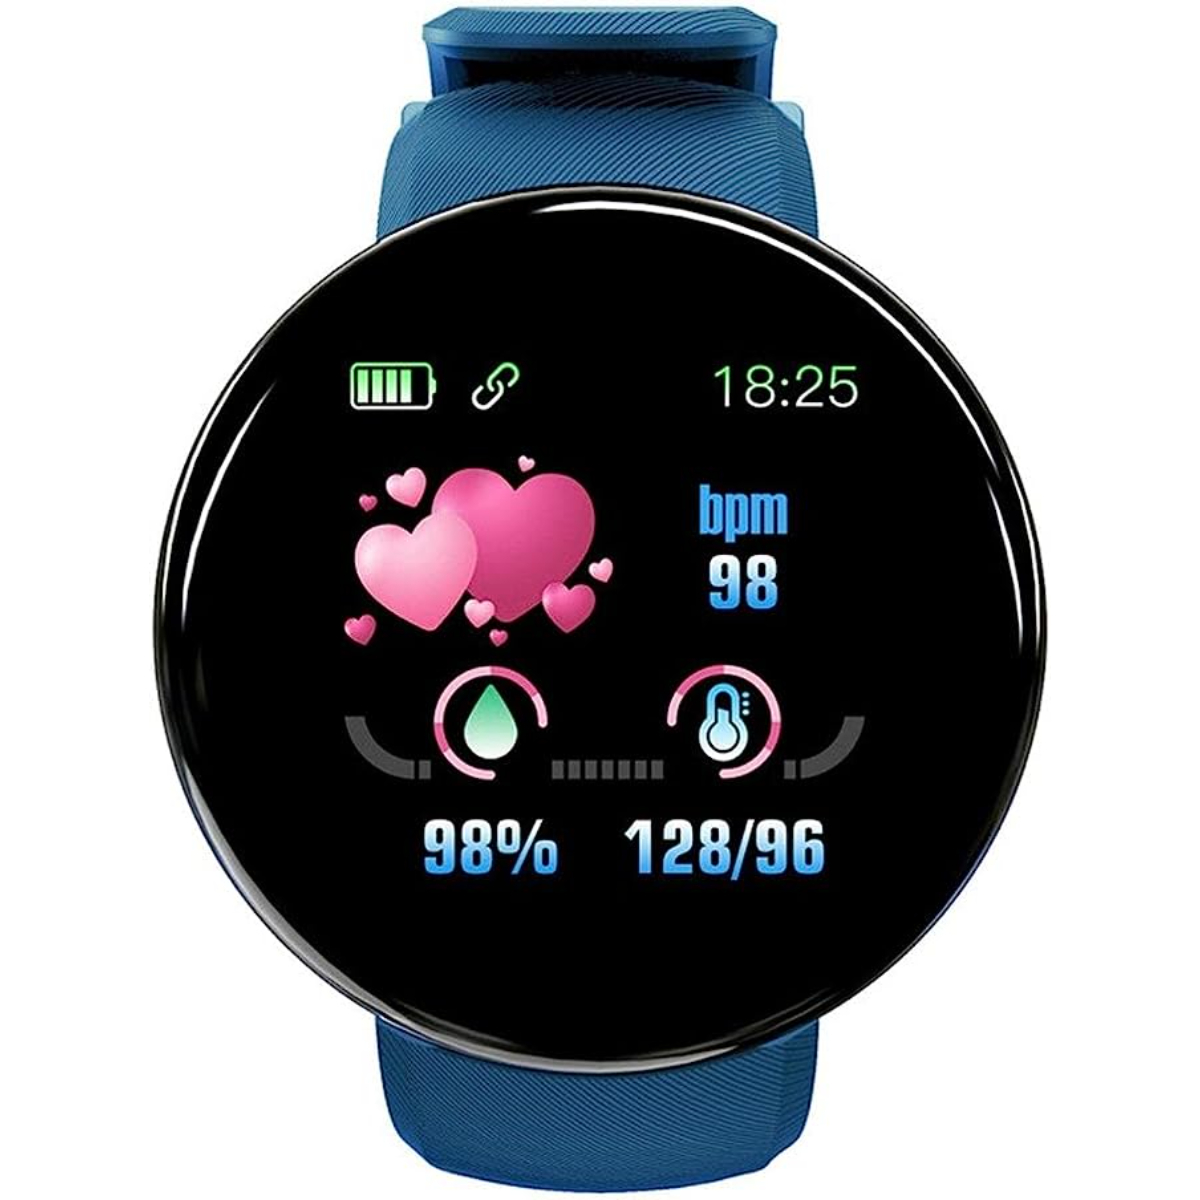 Reloj Smartwatch Klack Kd18 Con Frecuencia Cardíaca, Presión Arterial Y Notificaciones